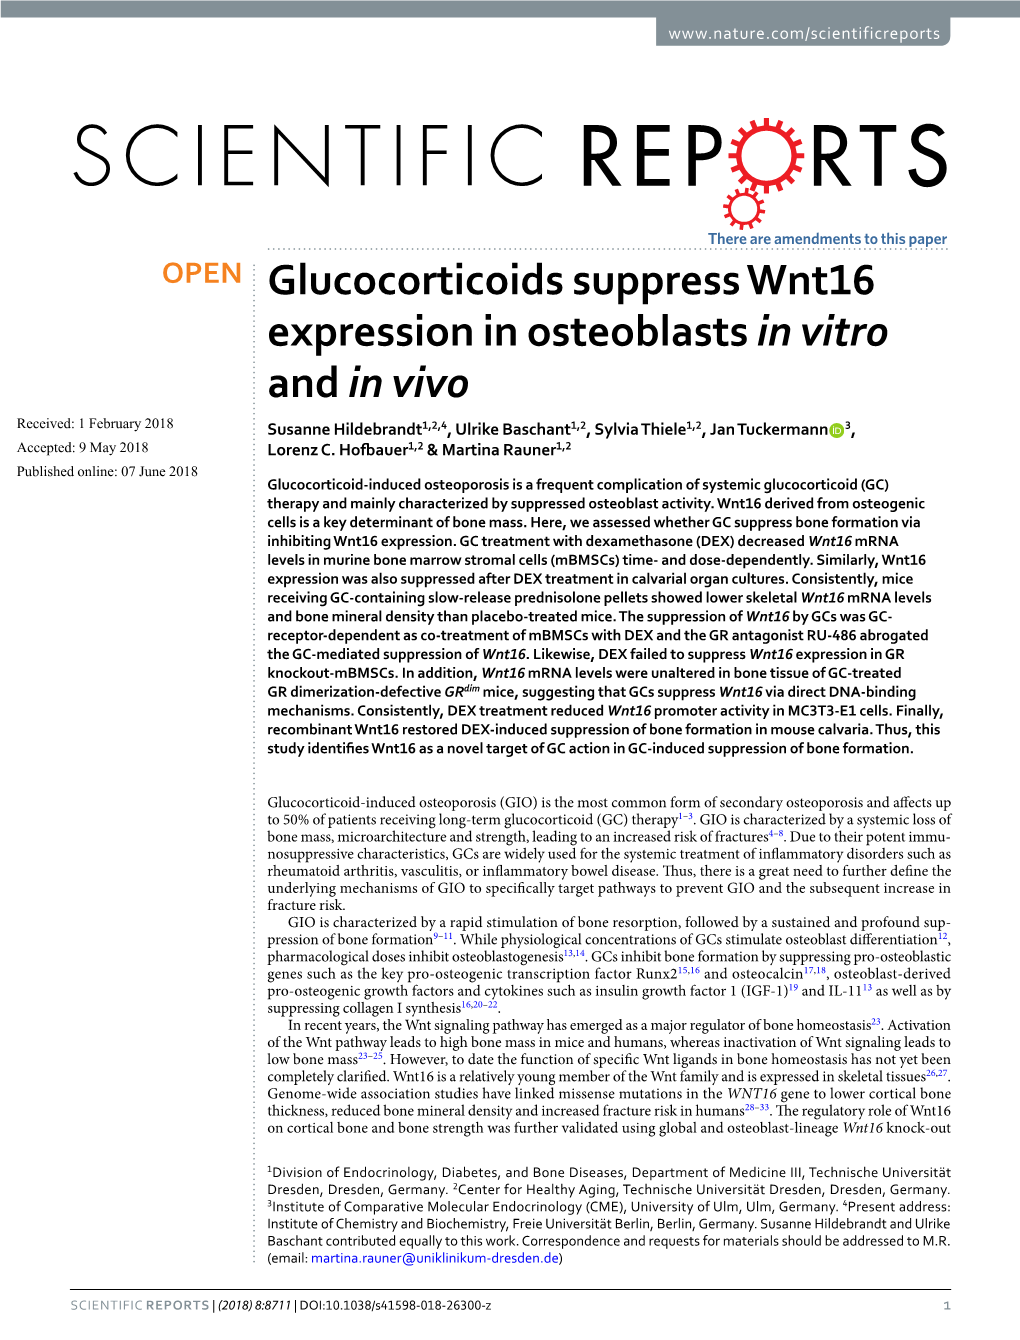 Glucocorticoids Suppress Wnt16 Expression in Osteoblasts in Vitro